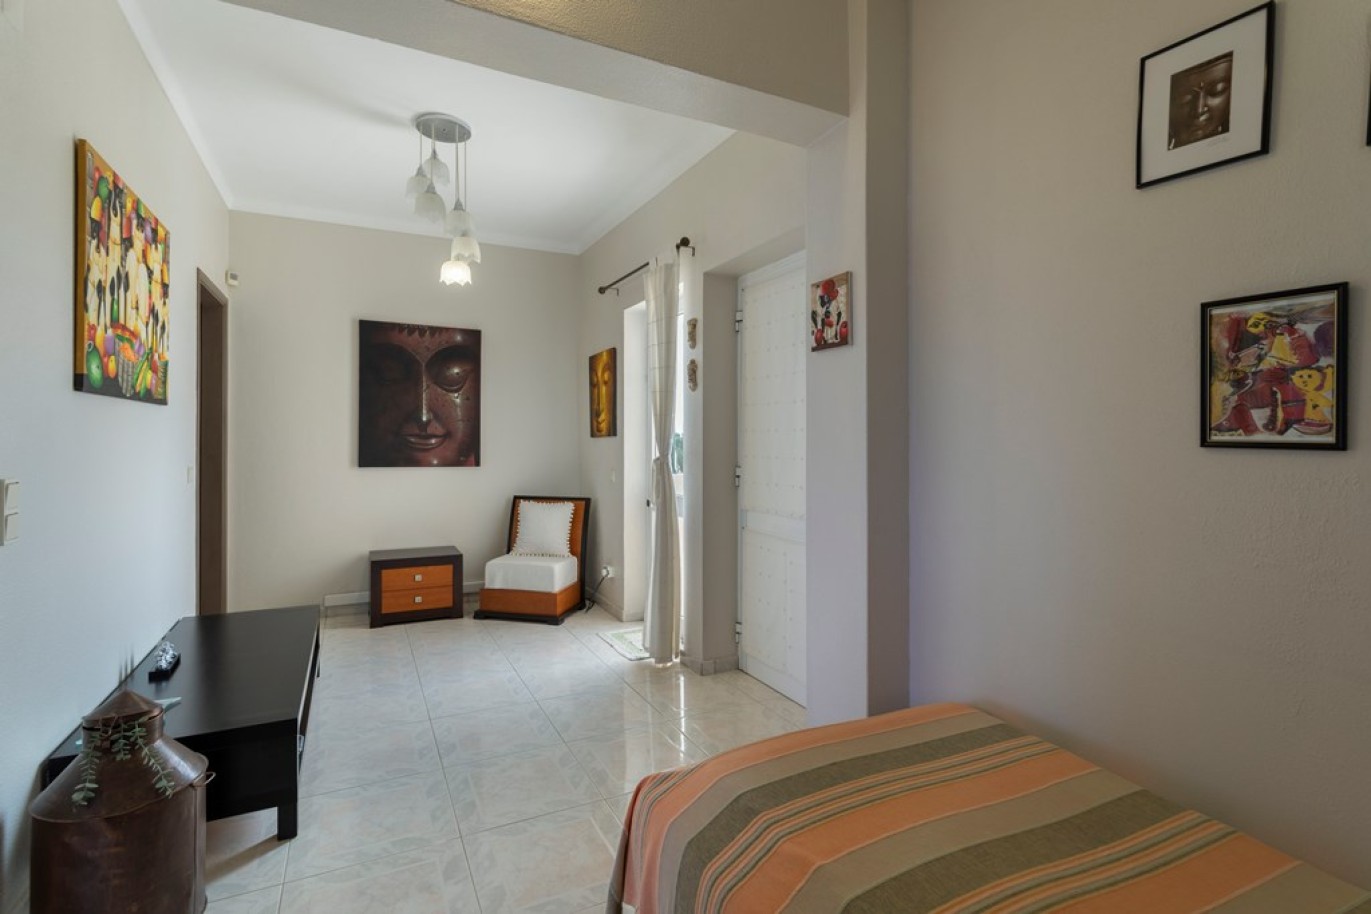 Propriedade com dois T1, um T2 e espaço comercial, para venda em Vilamoura, Algarve_253015